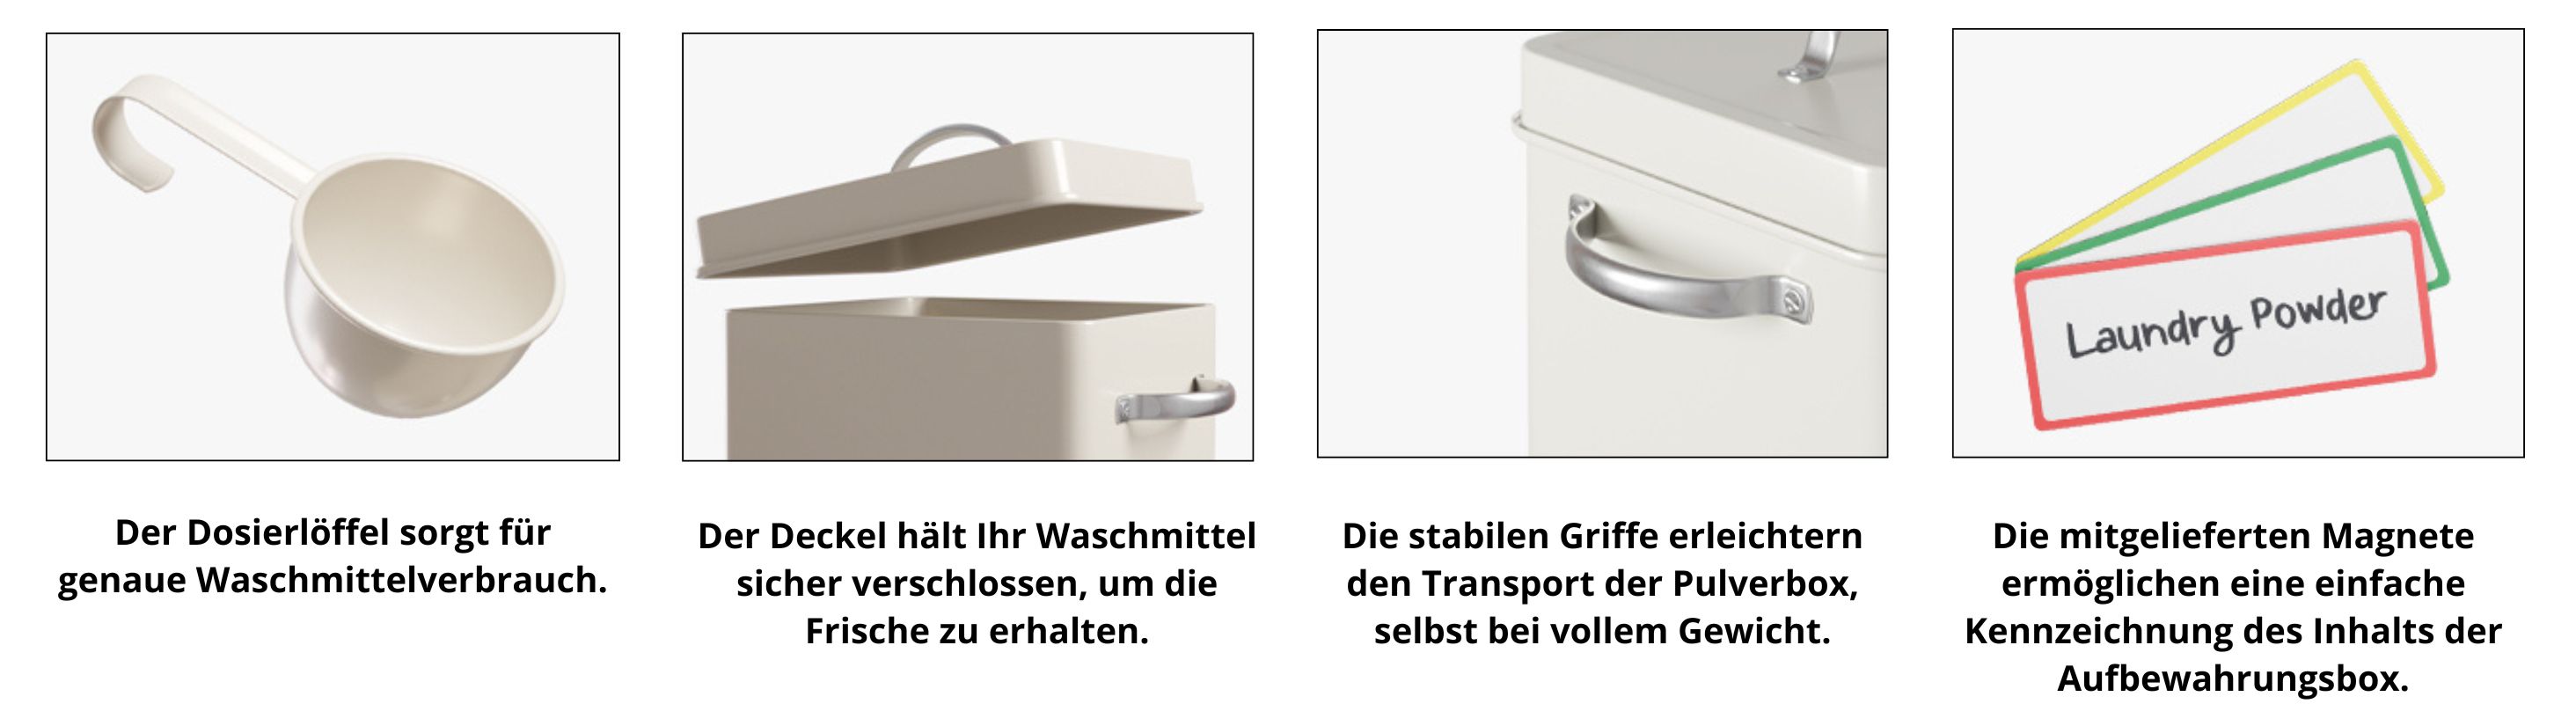 Björn&Schiller Waschpulver Aufbewahrungsbox 6,5 L, Waschmittel Aufbewahrung, Metall Waschmittelbox, Waschmittelbehälter mit Dosierer, Box für Spülmaschinenpulver, Geschirrspülpulver Behälter-3